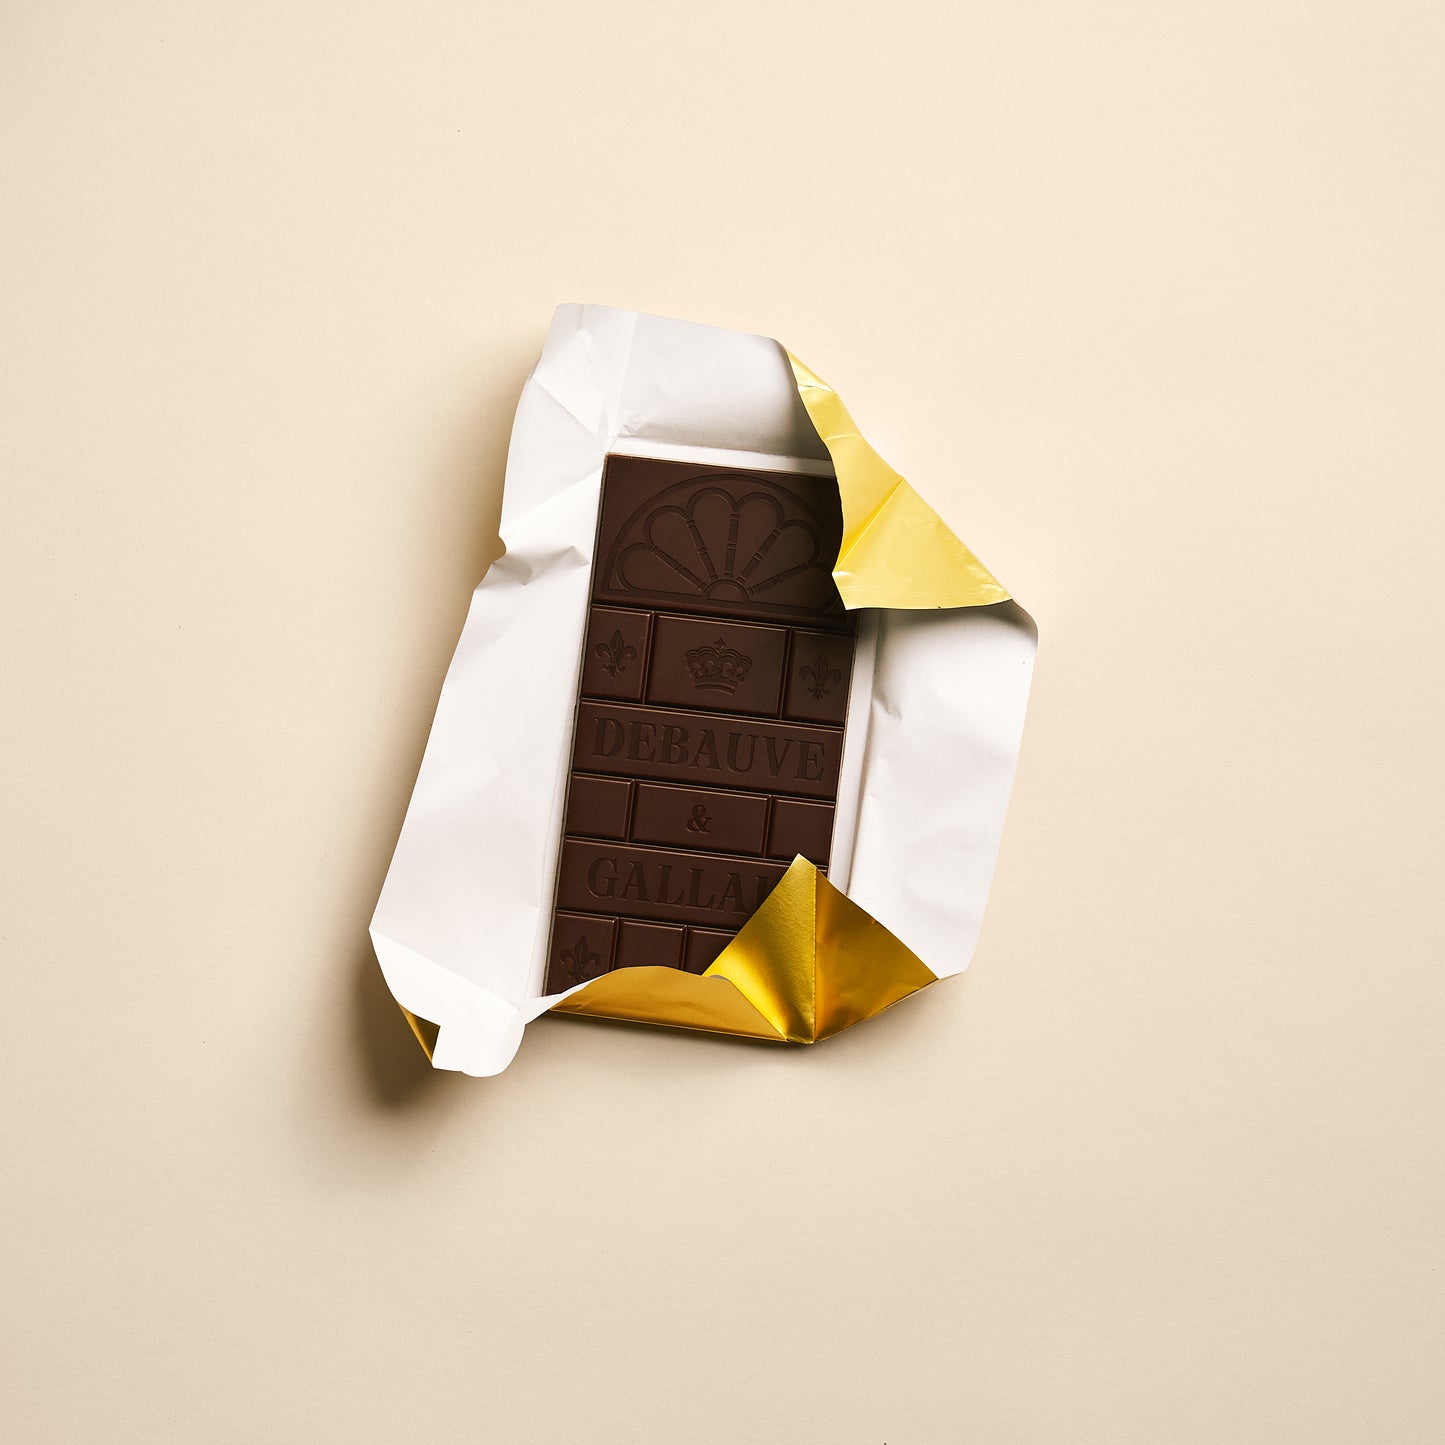 85% Dark chocolate bar, Peru origin